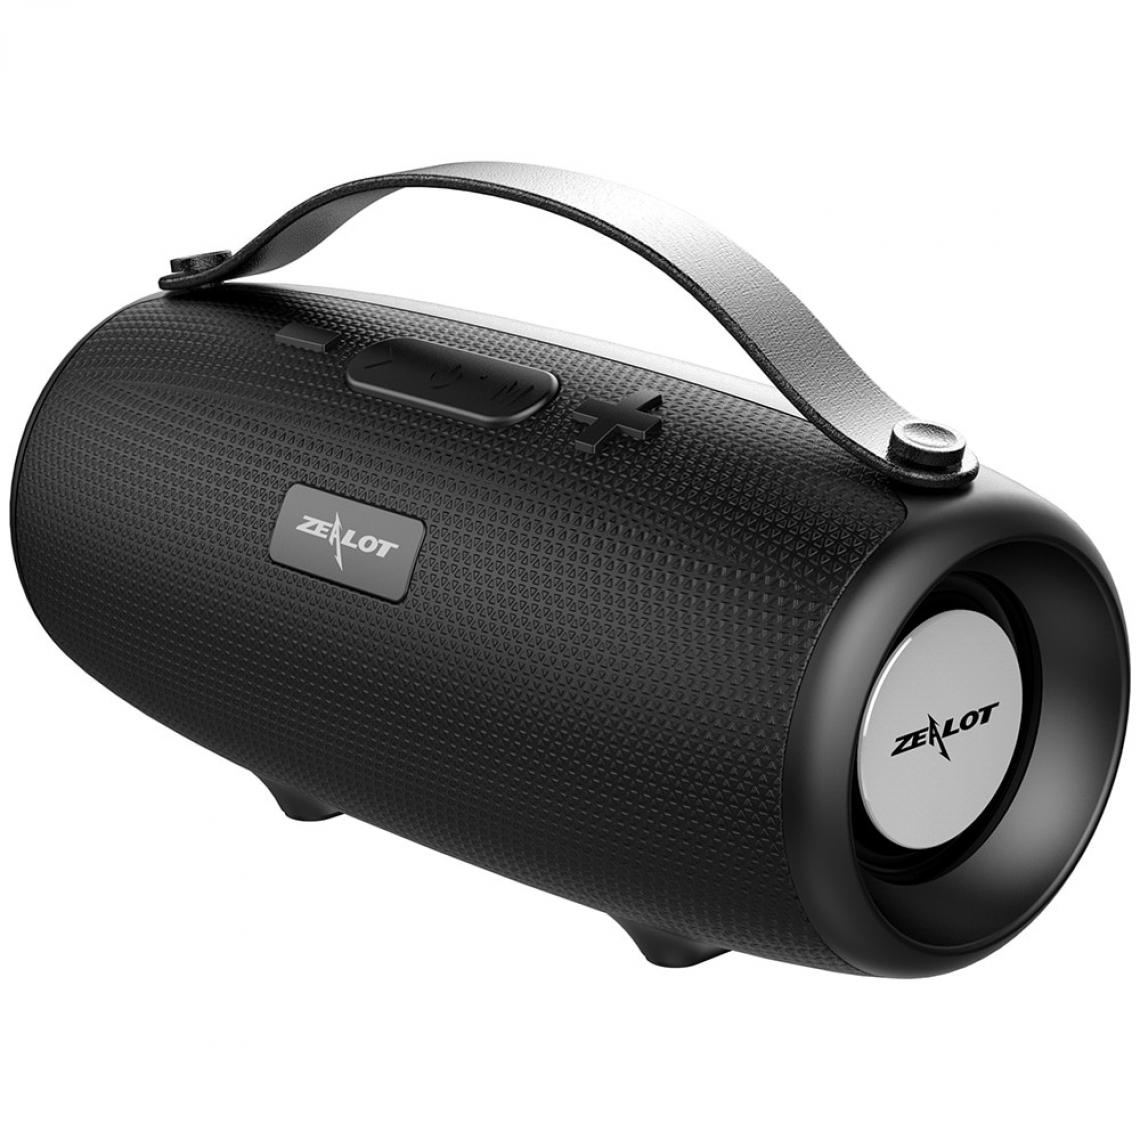 Universal - Haut-parleur HiFi portable noir, haut-parleur Bluetooth, haut-parleur subwoofer, support microphone, carte TF, AUX, clé USB(Le noir) - Enceinte PC